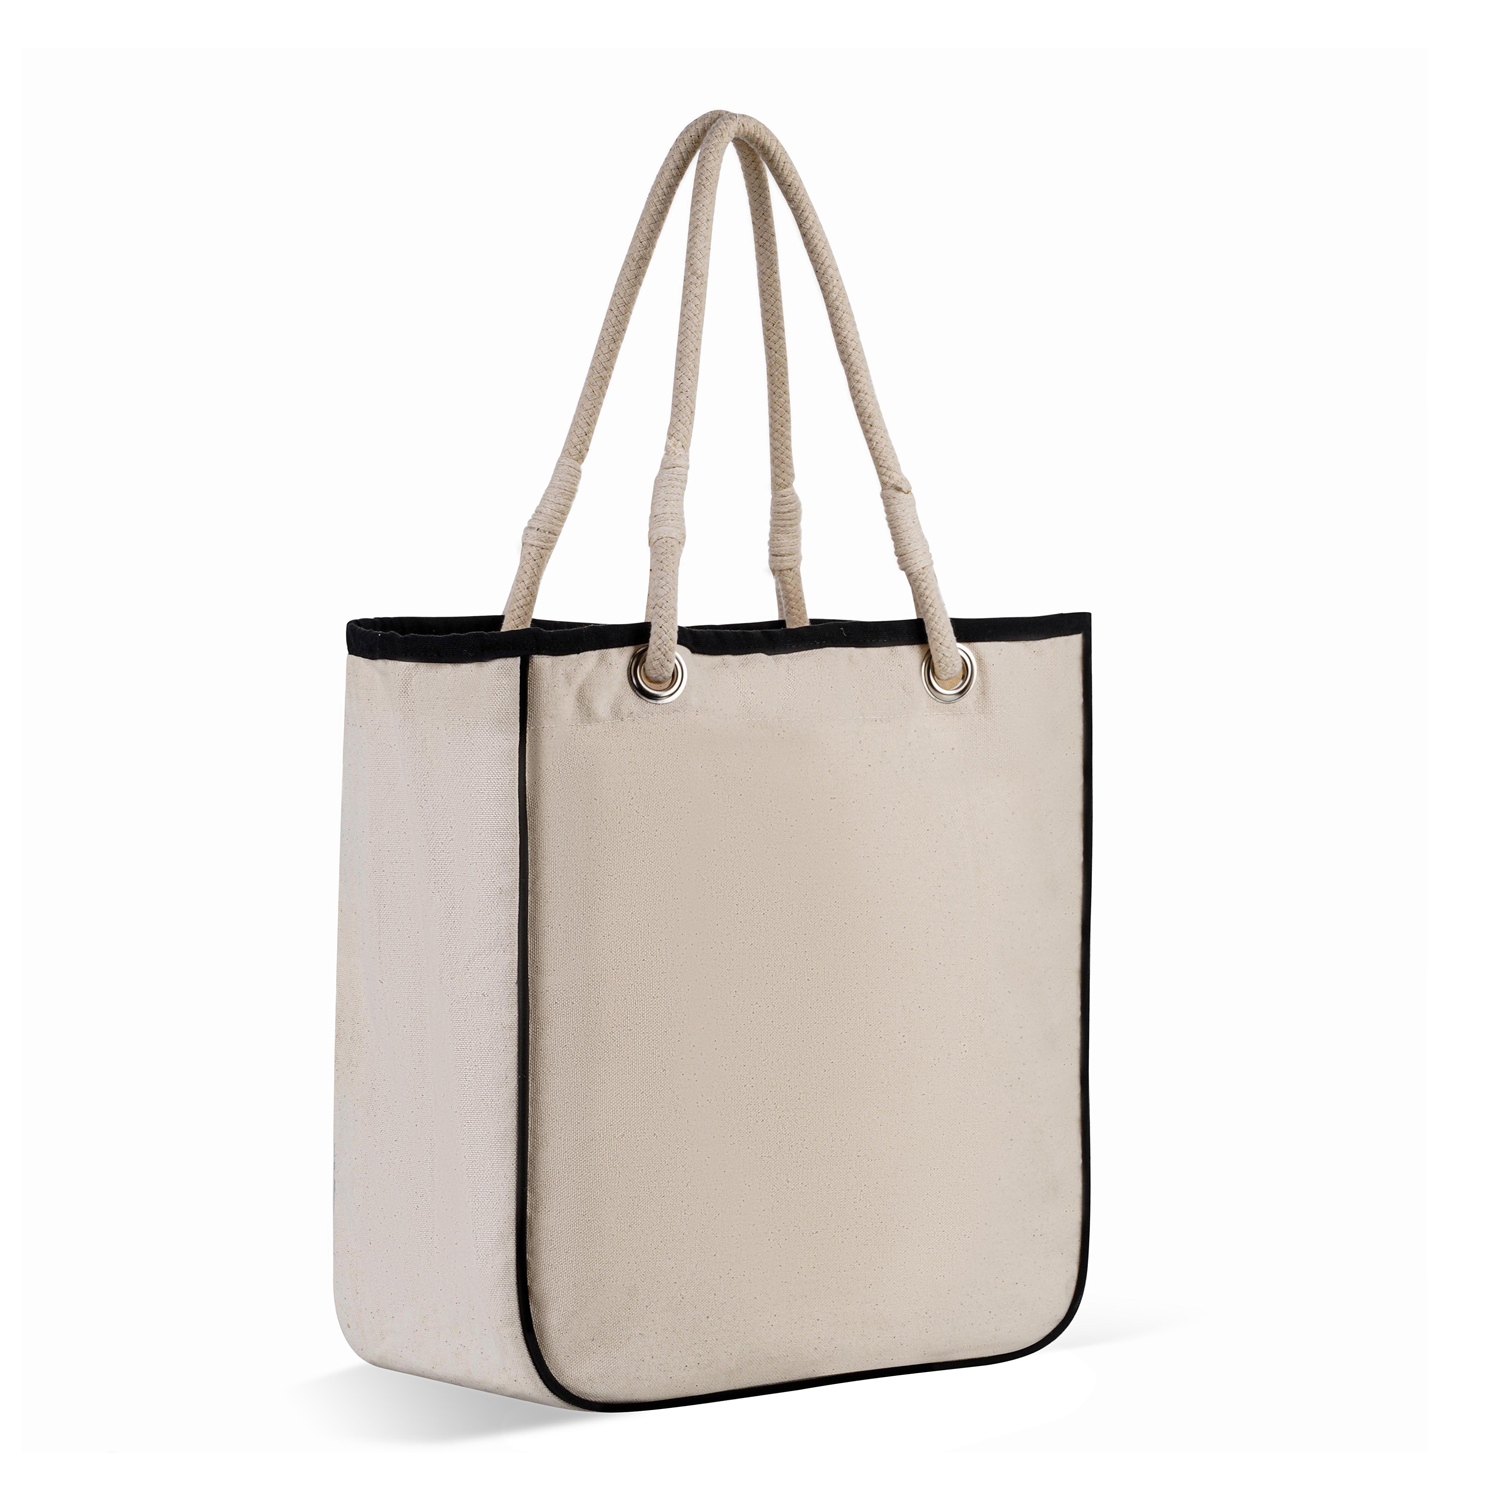 shop discounts online wholesale Micheal kors purse and wallet set! |  customplastics.net.au